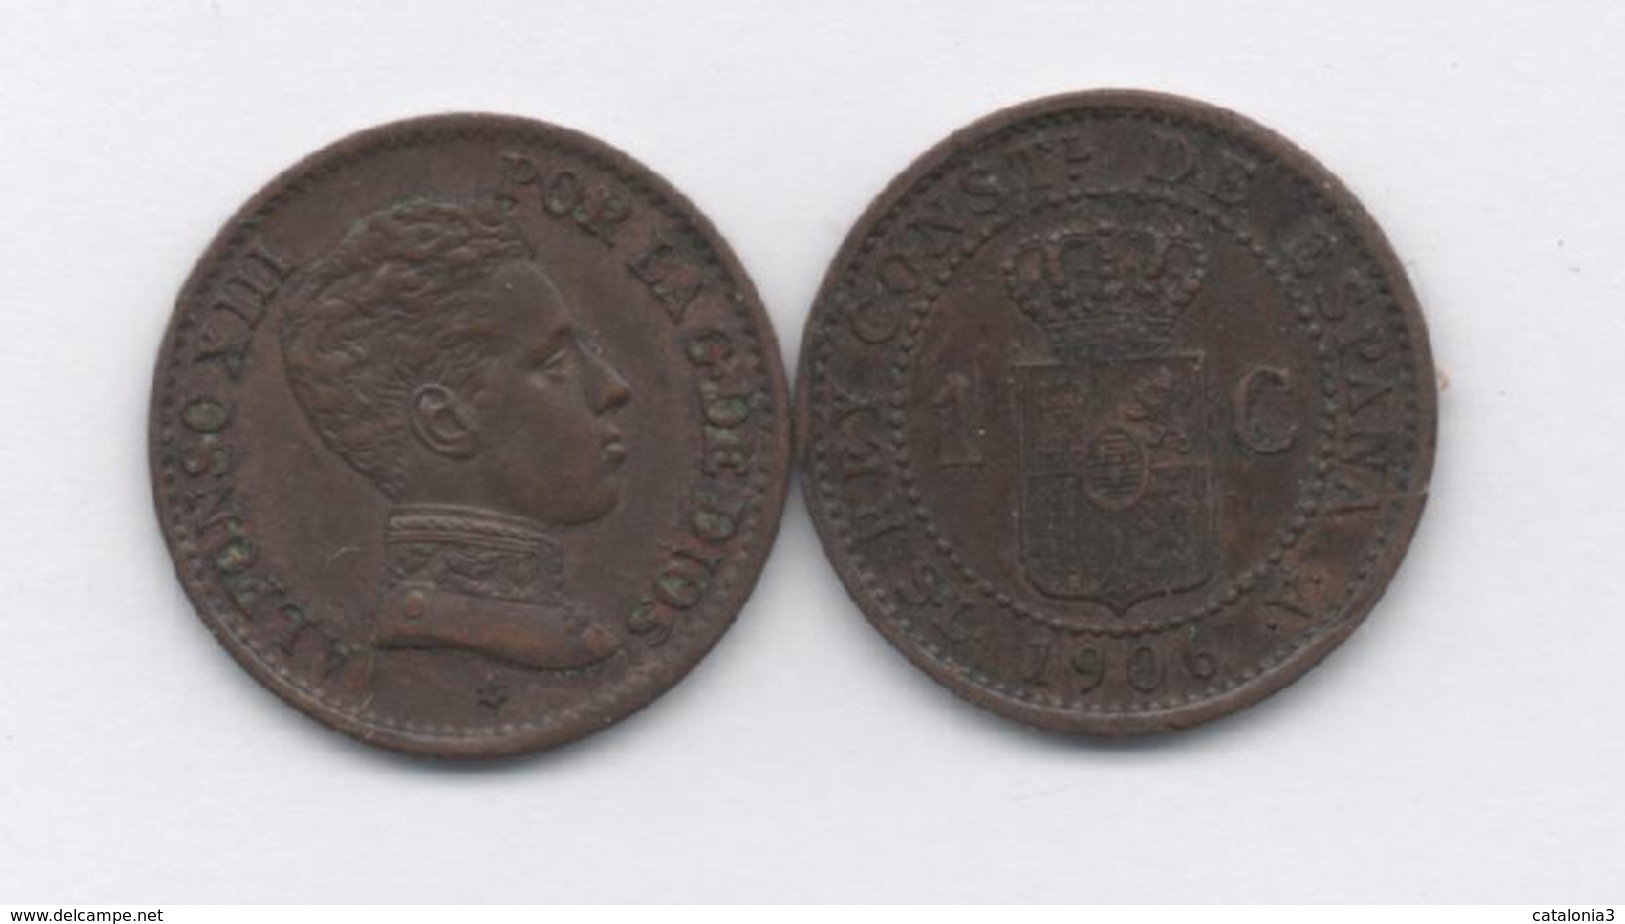 ESPAÑA - 1 CENTIMO 1906 - Provincial Currencies